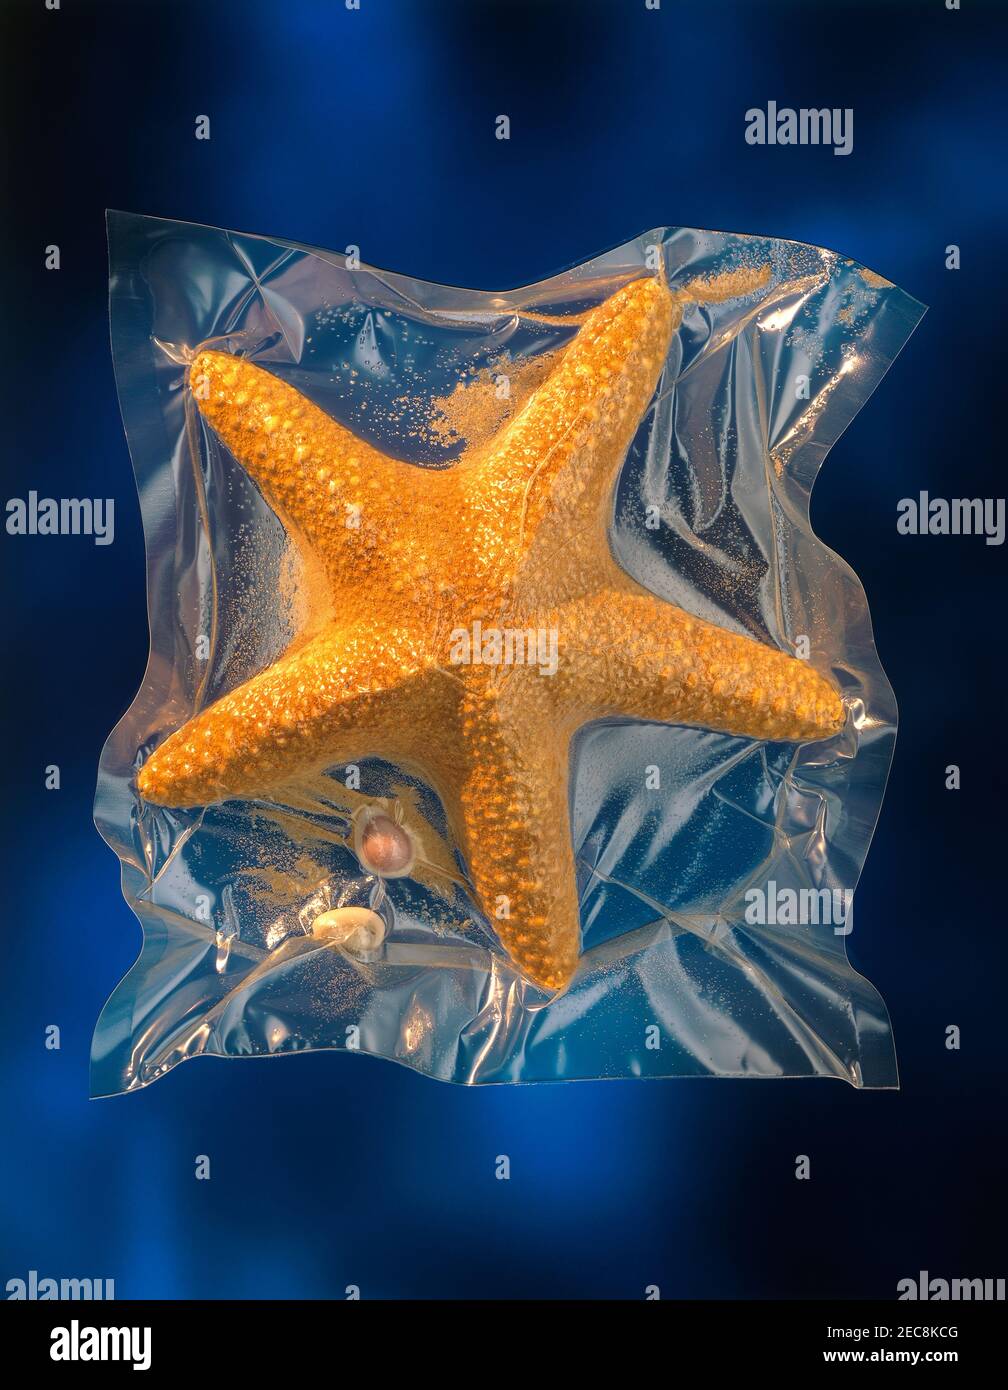 étoiles de mer emballées sous vide conservées Banque D'Images